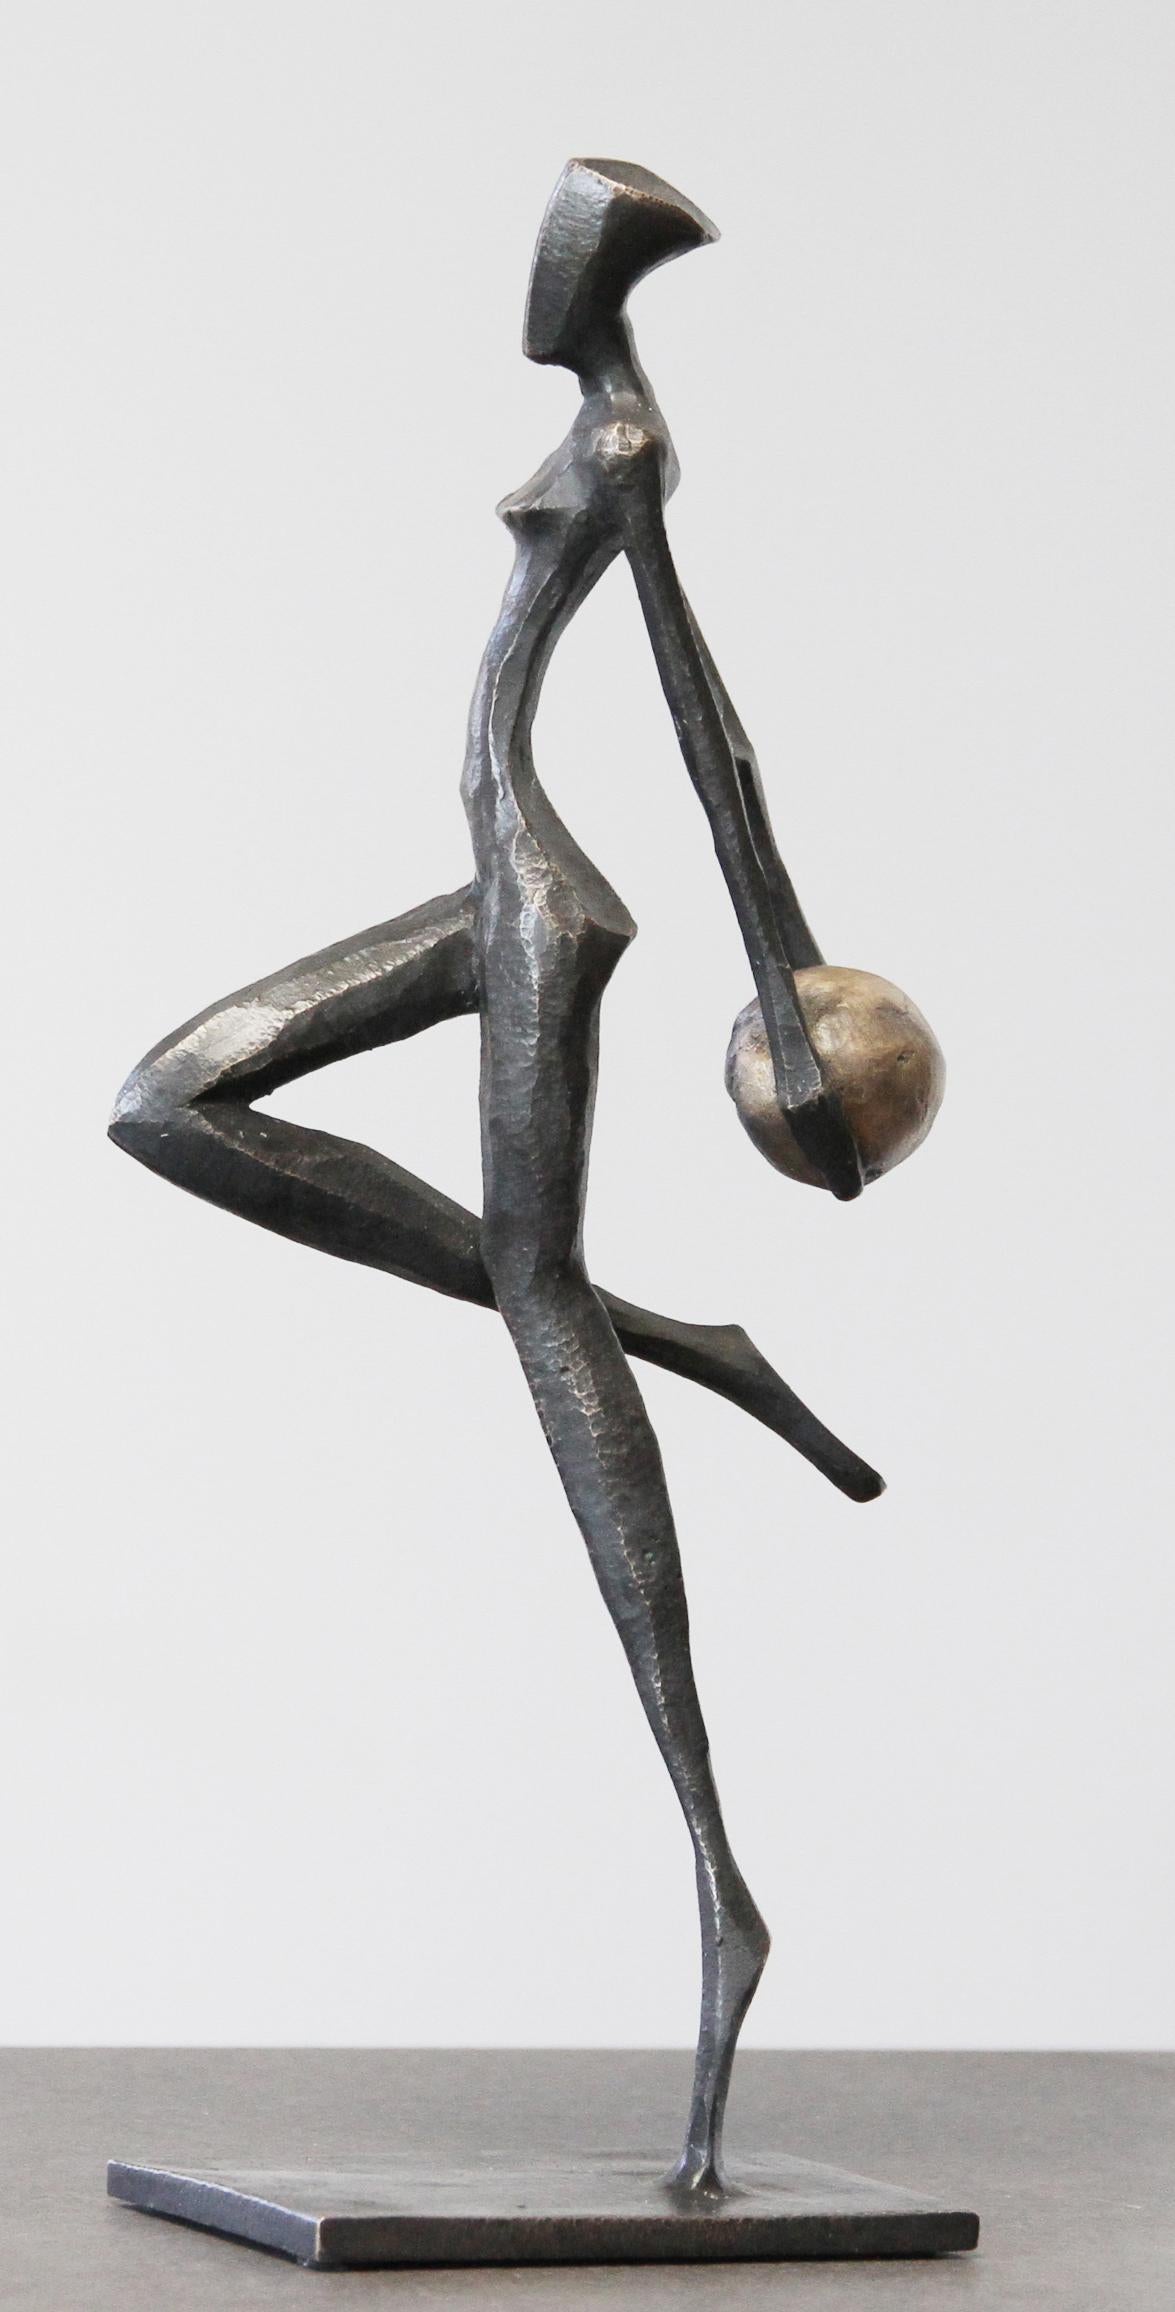 Rhea ist eine elegante figurative Bronzeskulptur von Nando Kallweit.

Der stilisierte ägyptisch angehauchte Kopf ist der modernen jugendlichen Haltung nachempfunden, verweist aber auch auf die Bedeutung des Erbes. Ein schönes Stück für sich allein